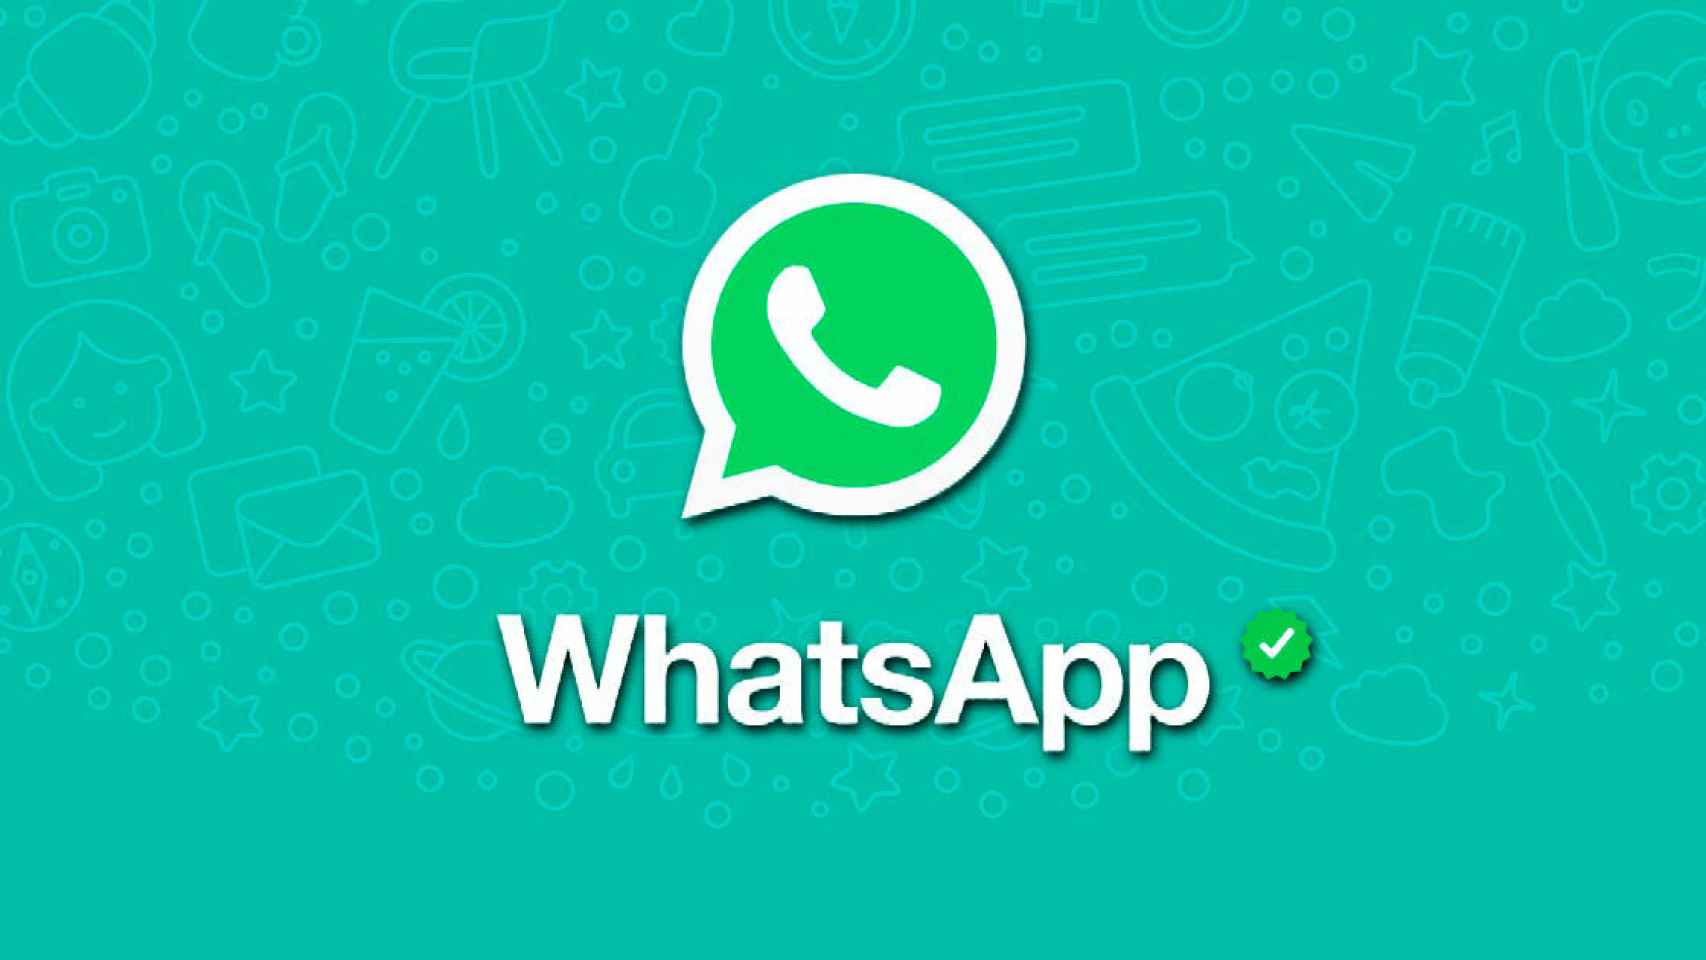 WhatsApp para negocios tendrá mensajes cifrados, pero cualquier persona de la empresa podrá leerte